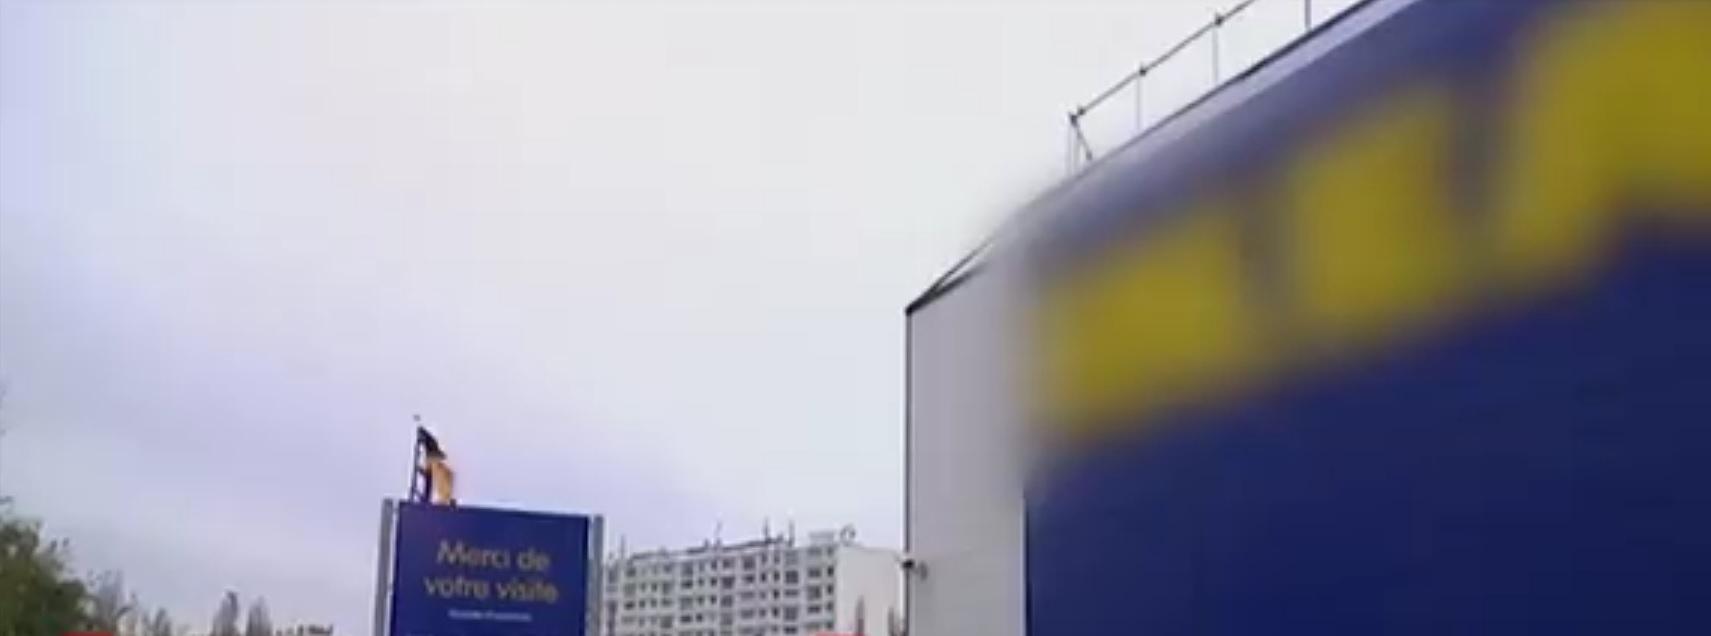 IKEA trebuie să plătească despăgubiri în valoare de un milion de euro după scandalul de spionaj